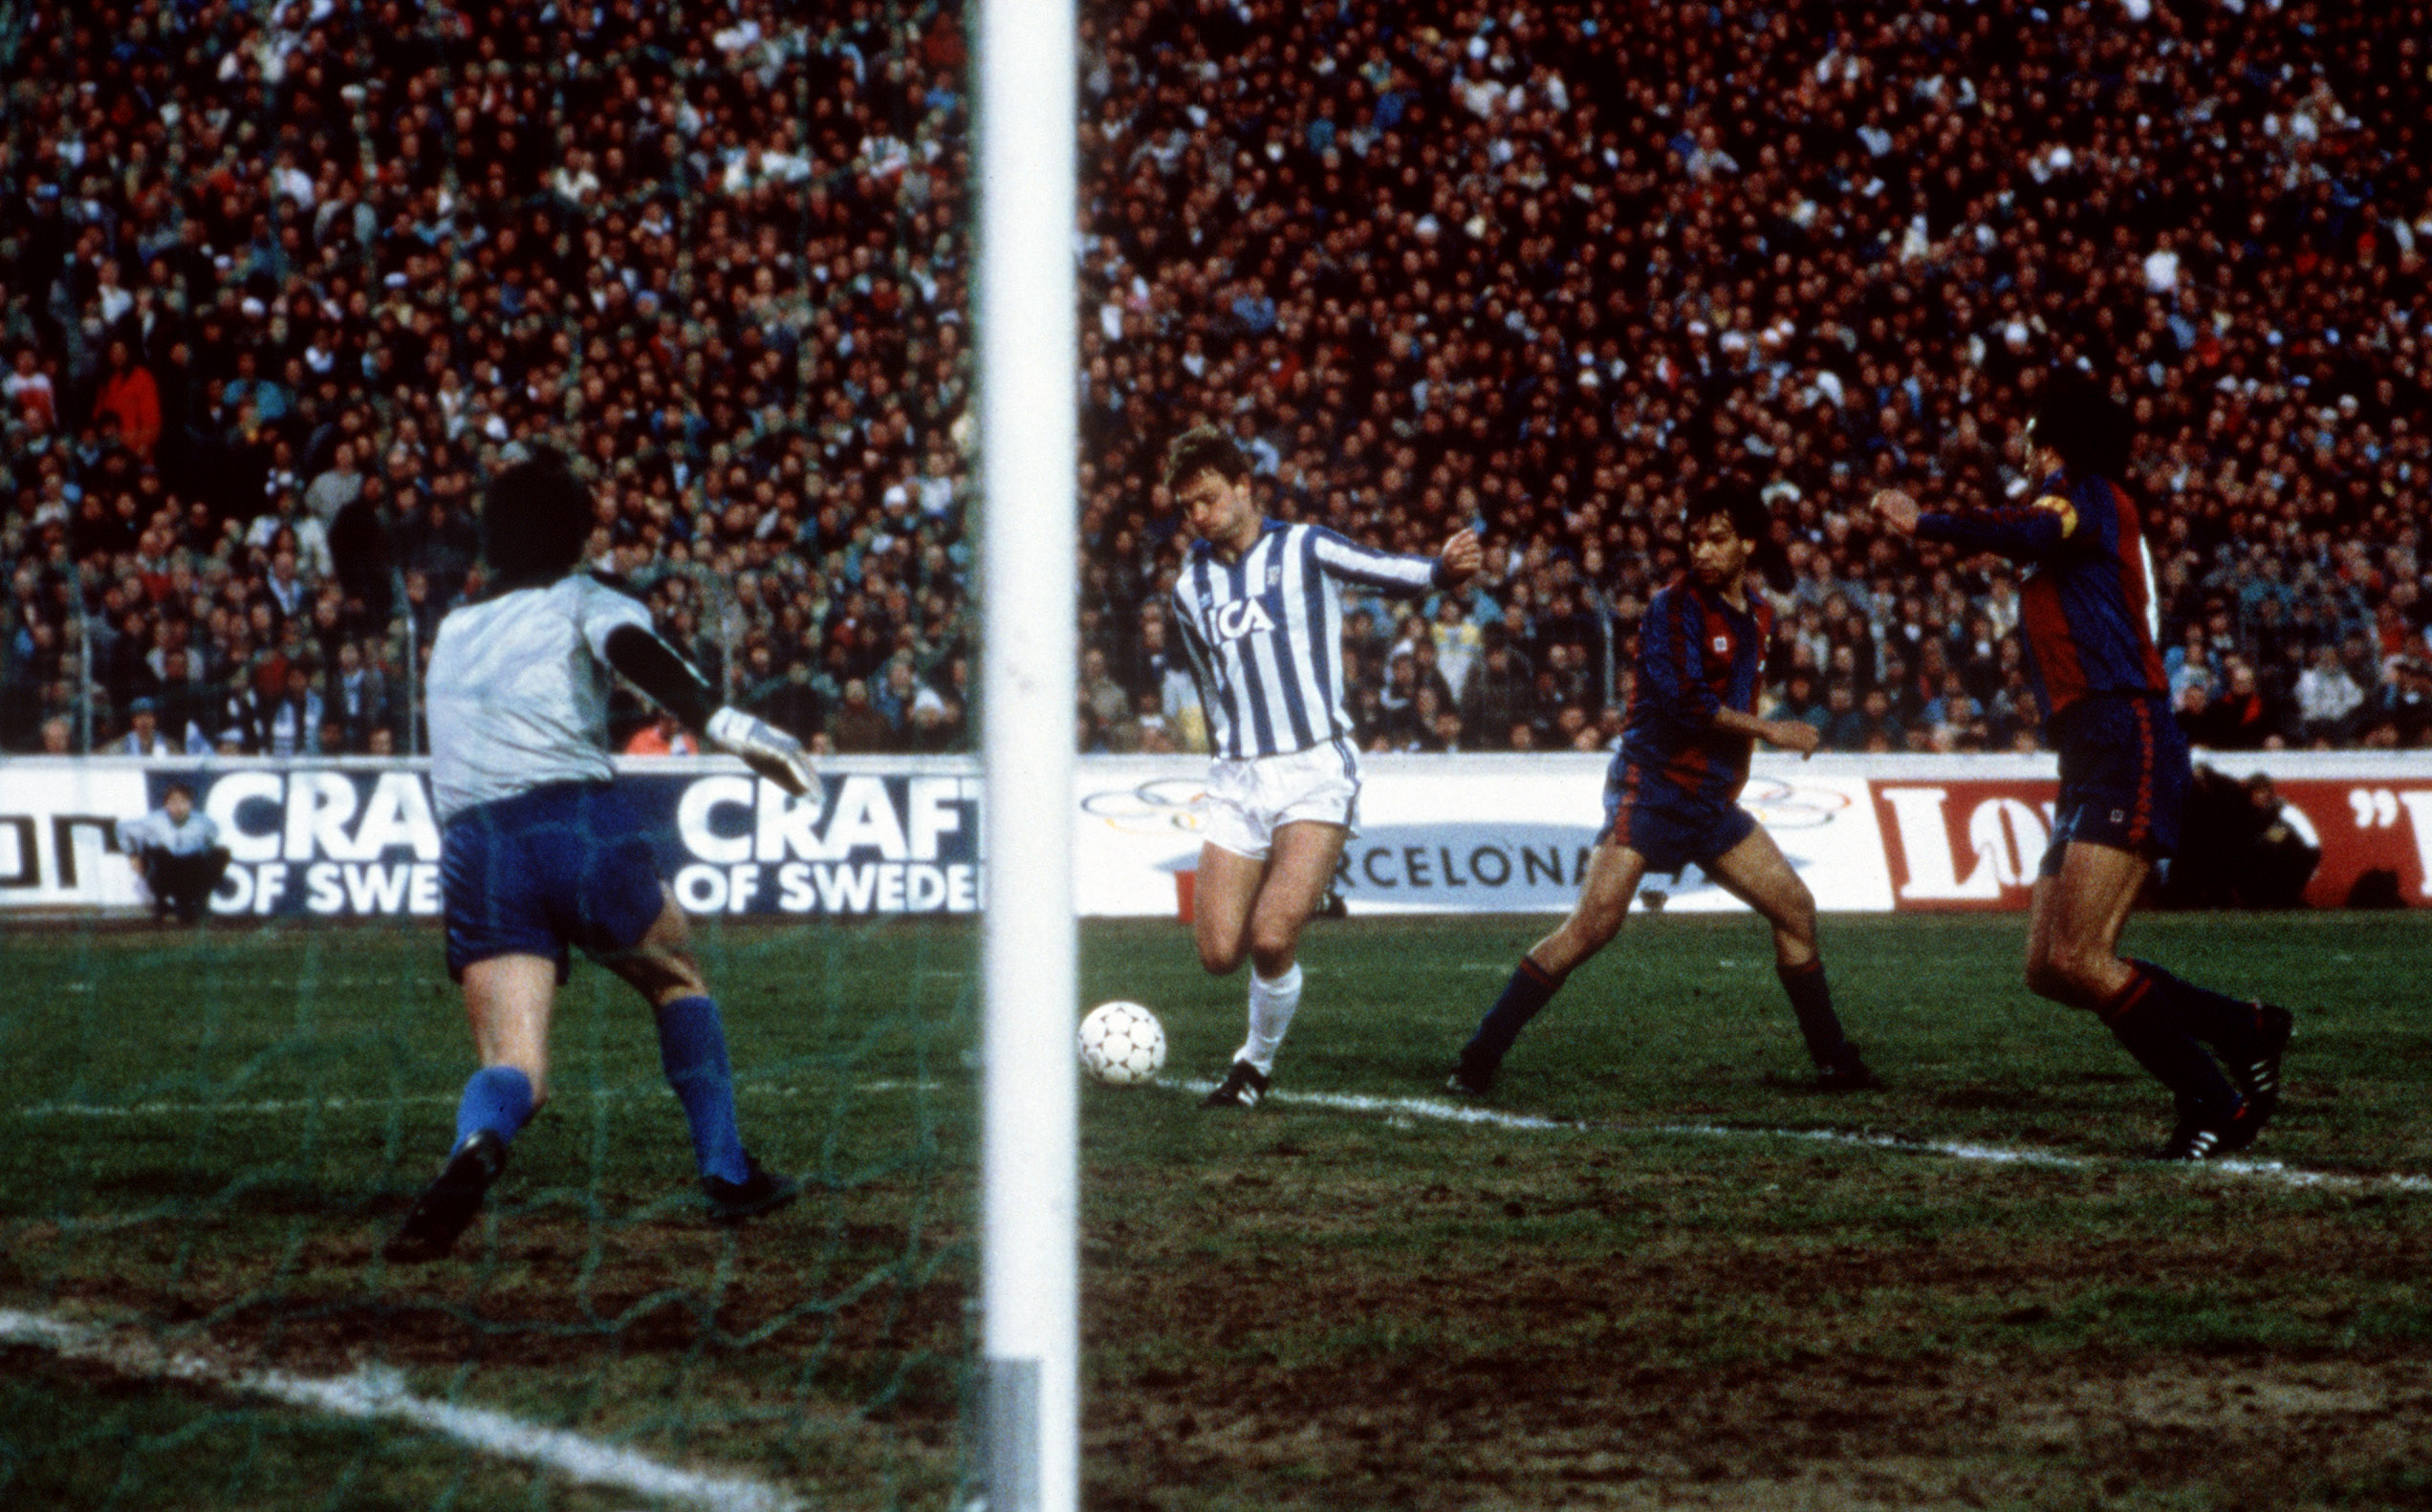 Em 1986, contra o Barça, o Göteborg jogou muito, mas sucumbiu na partida de volta.